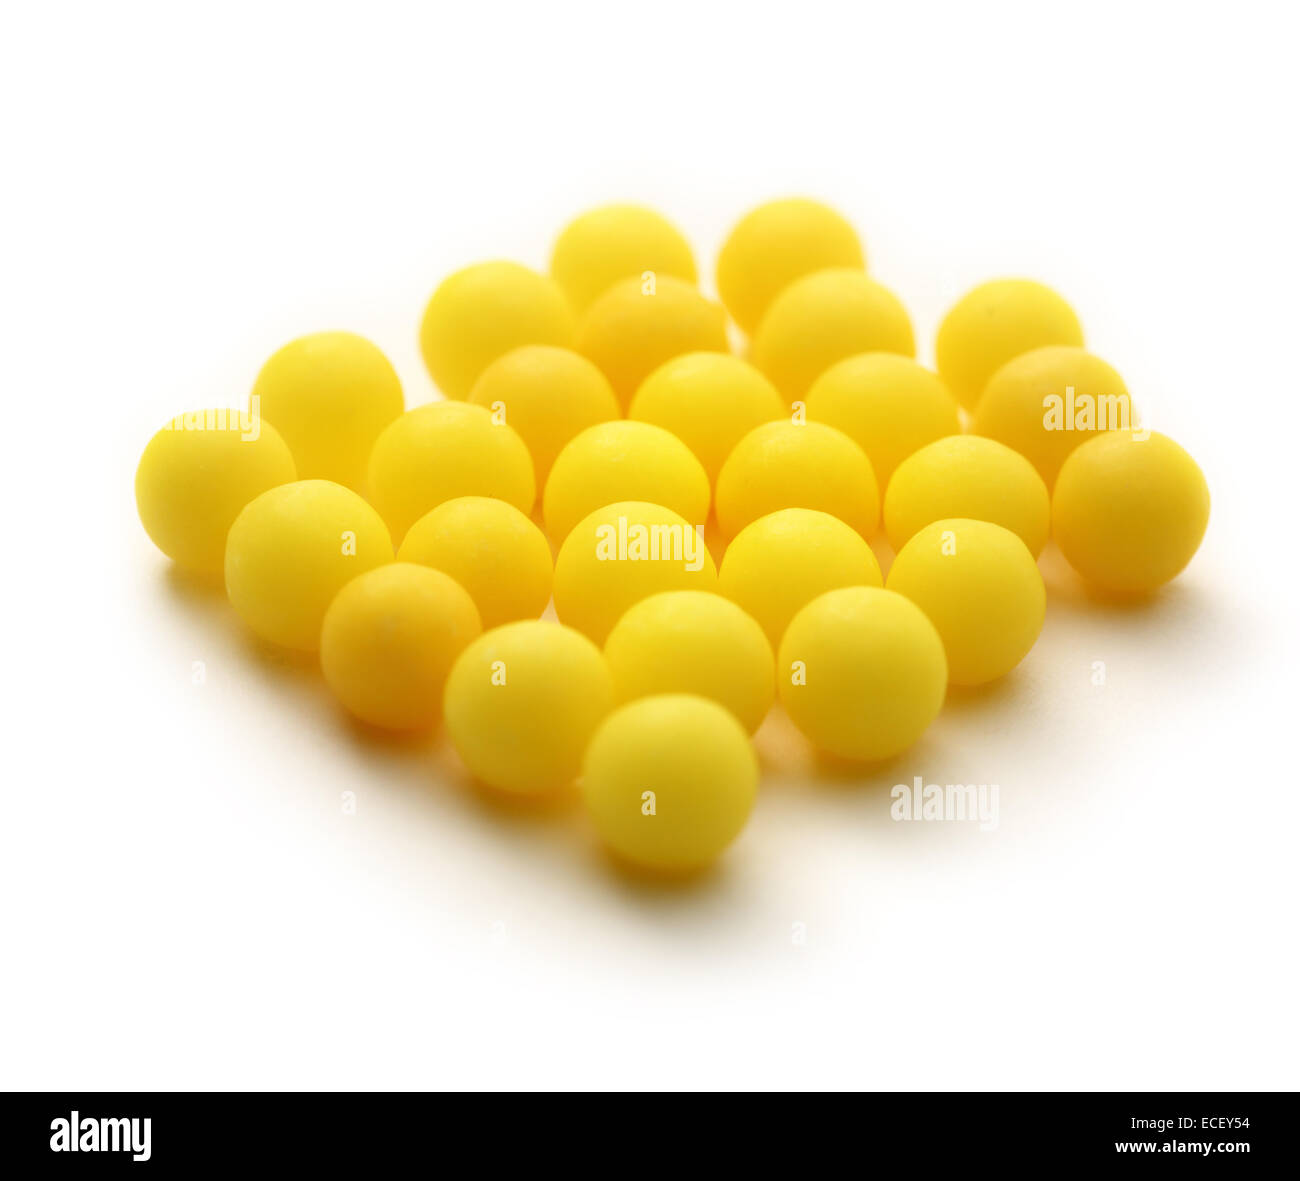 Heap of yellow vitamin pills Stock Photo